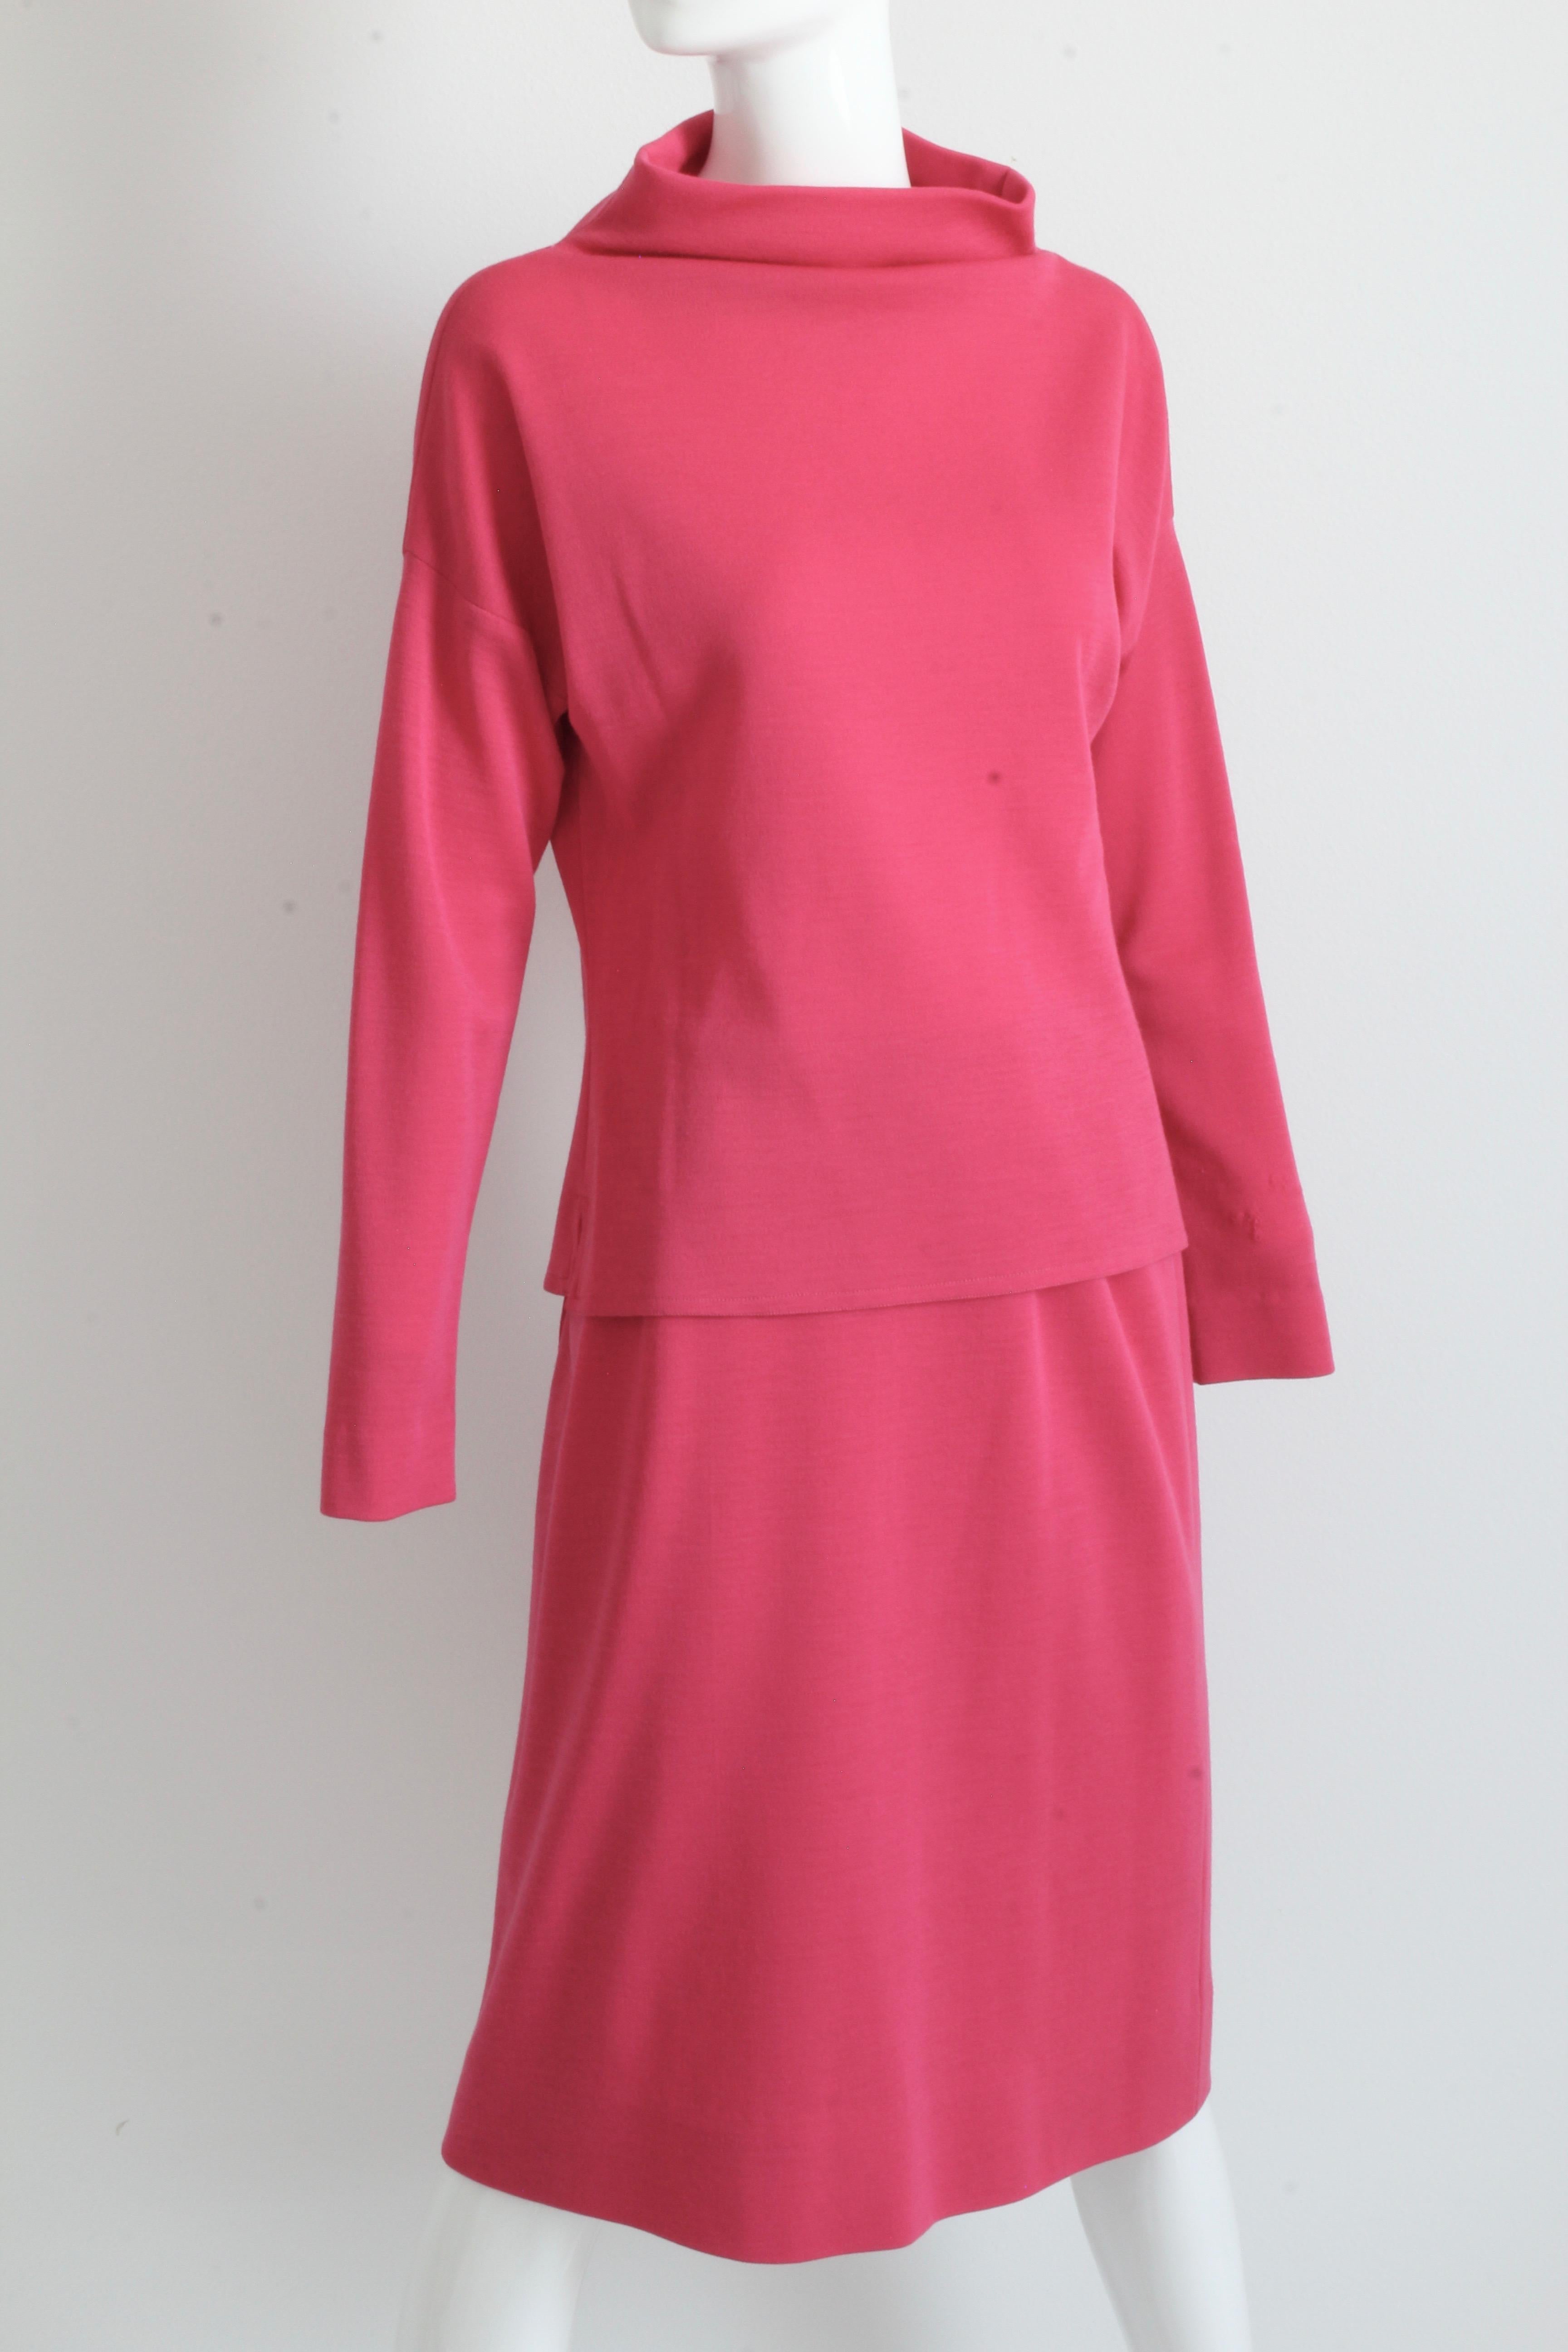 Bonnie Cashin Suit Pink Knit 2pc Set Raglan Top and Skirt Vintage 1960s For Sale 1